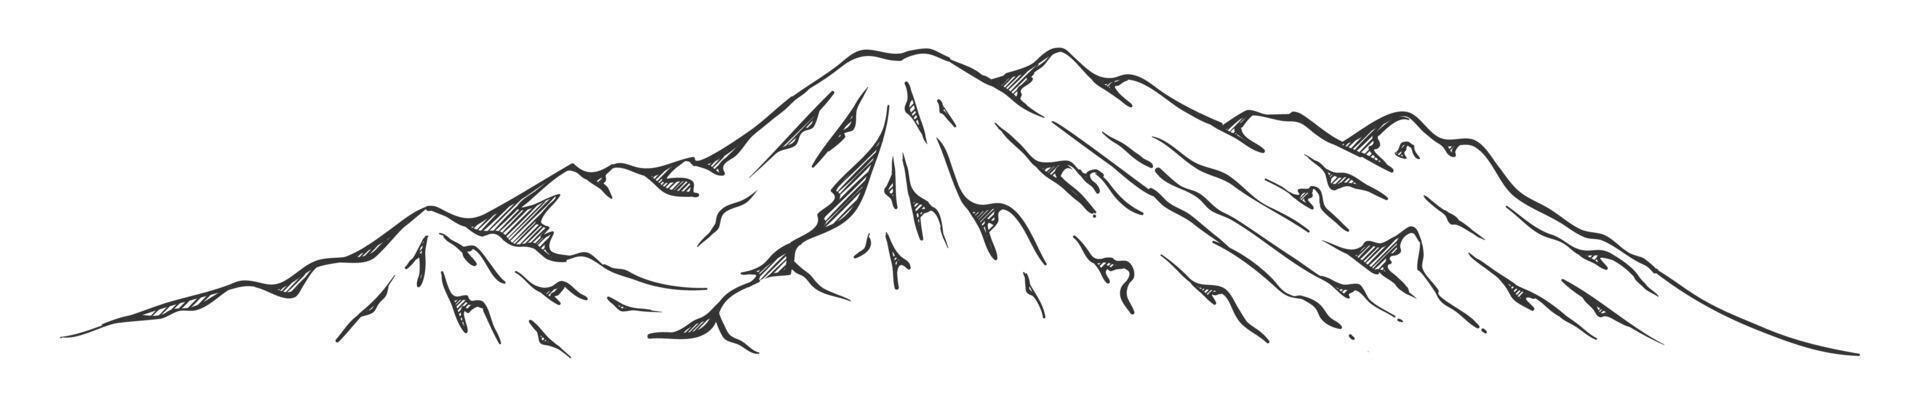 mano dibujado garabatear bosquejo montañas vector ilustración